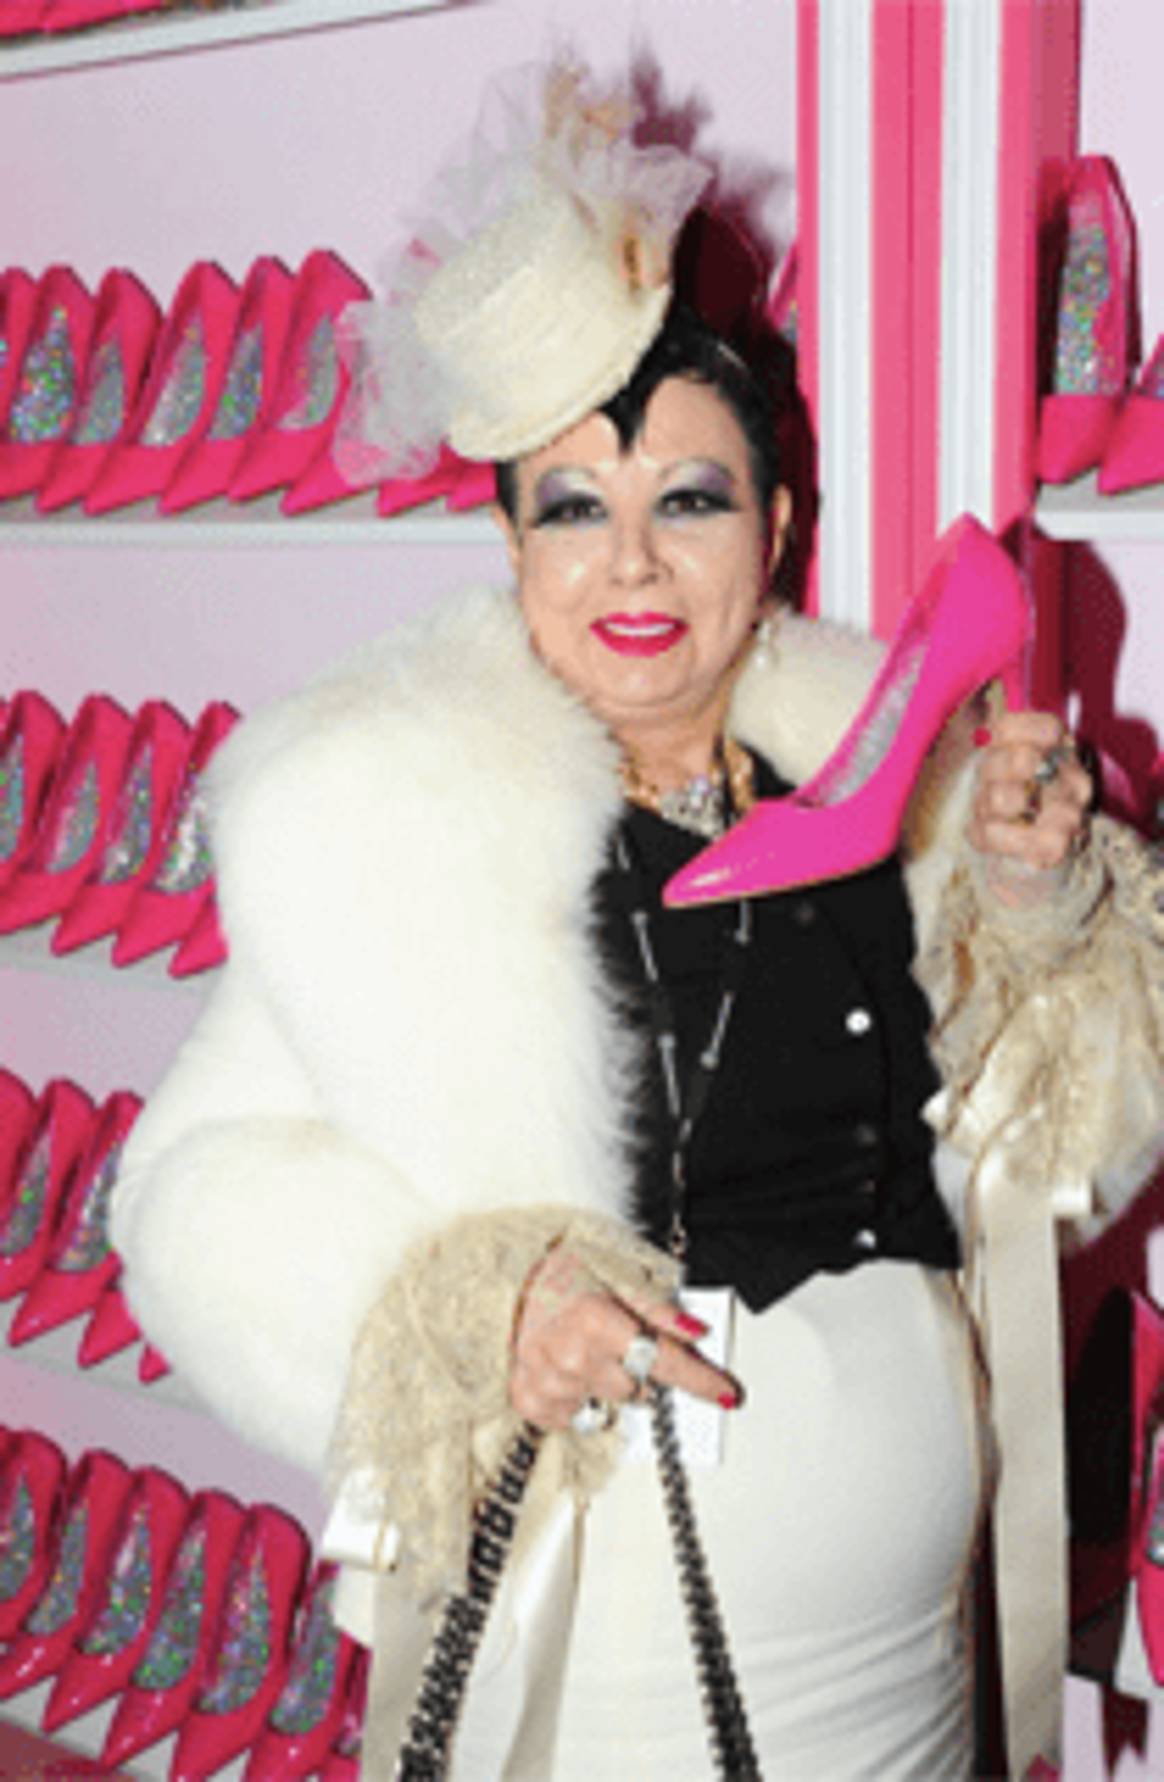 Queen of Retail: "Barbie, pleurt op..."